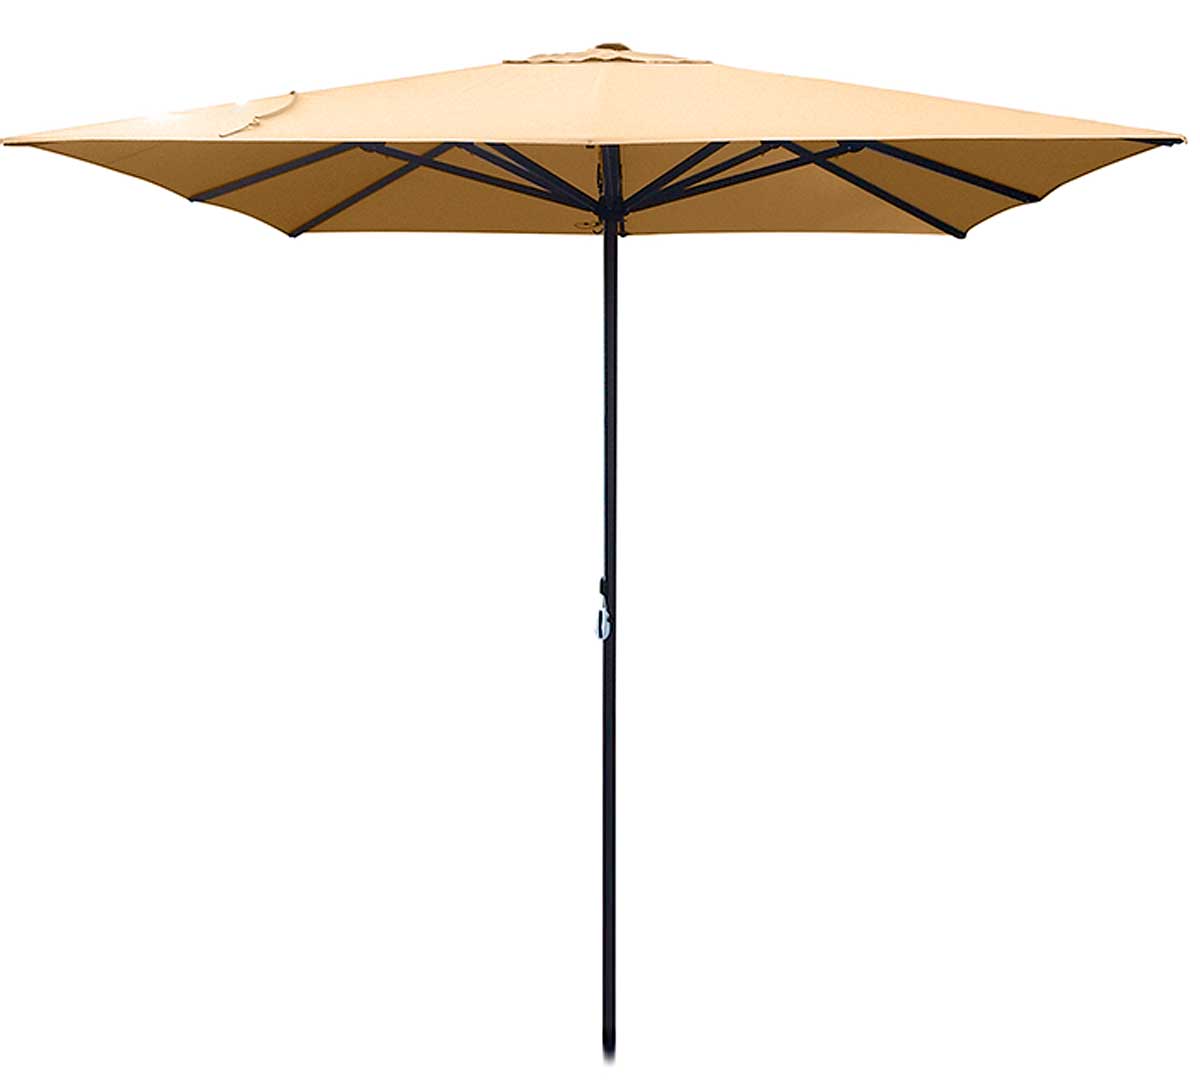 conva-parasol-aluminio-heavy-duty-899-acrilico-c-beige-arena-01